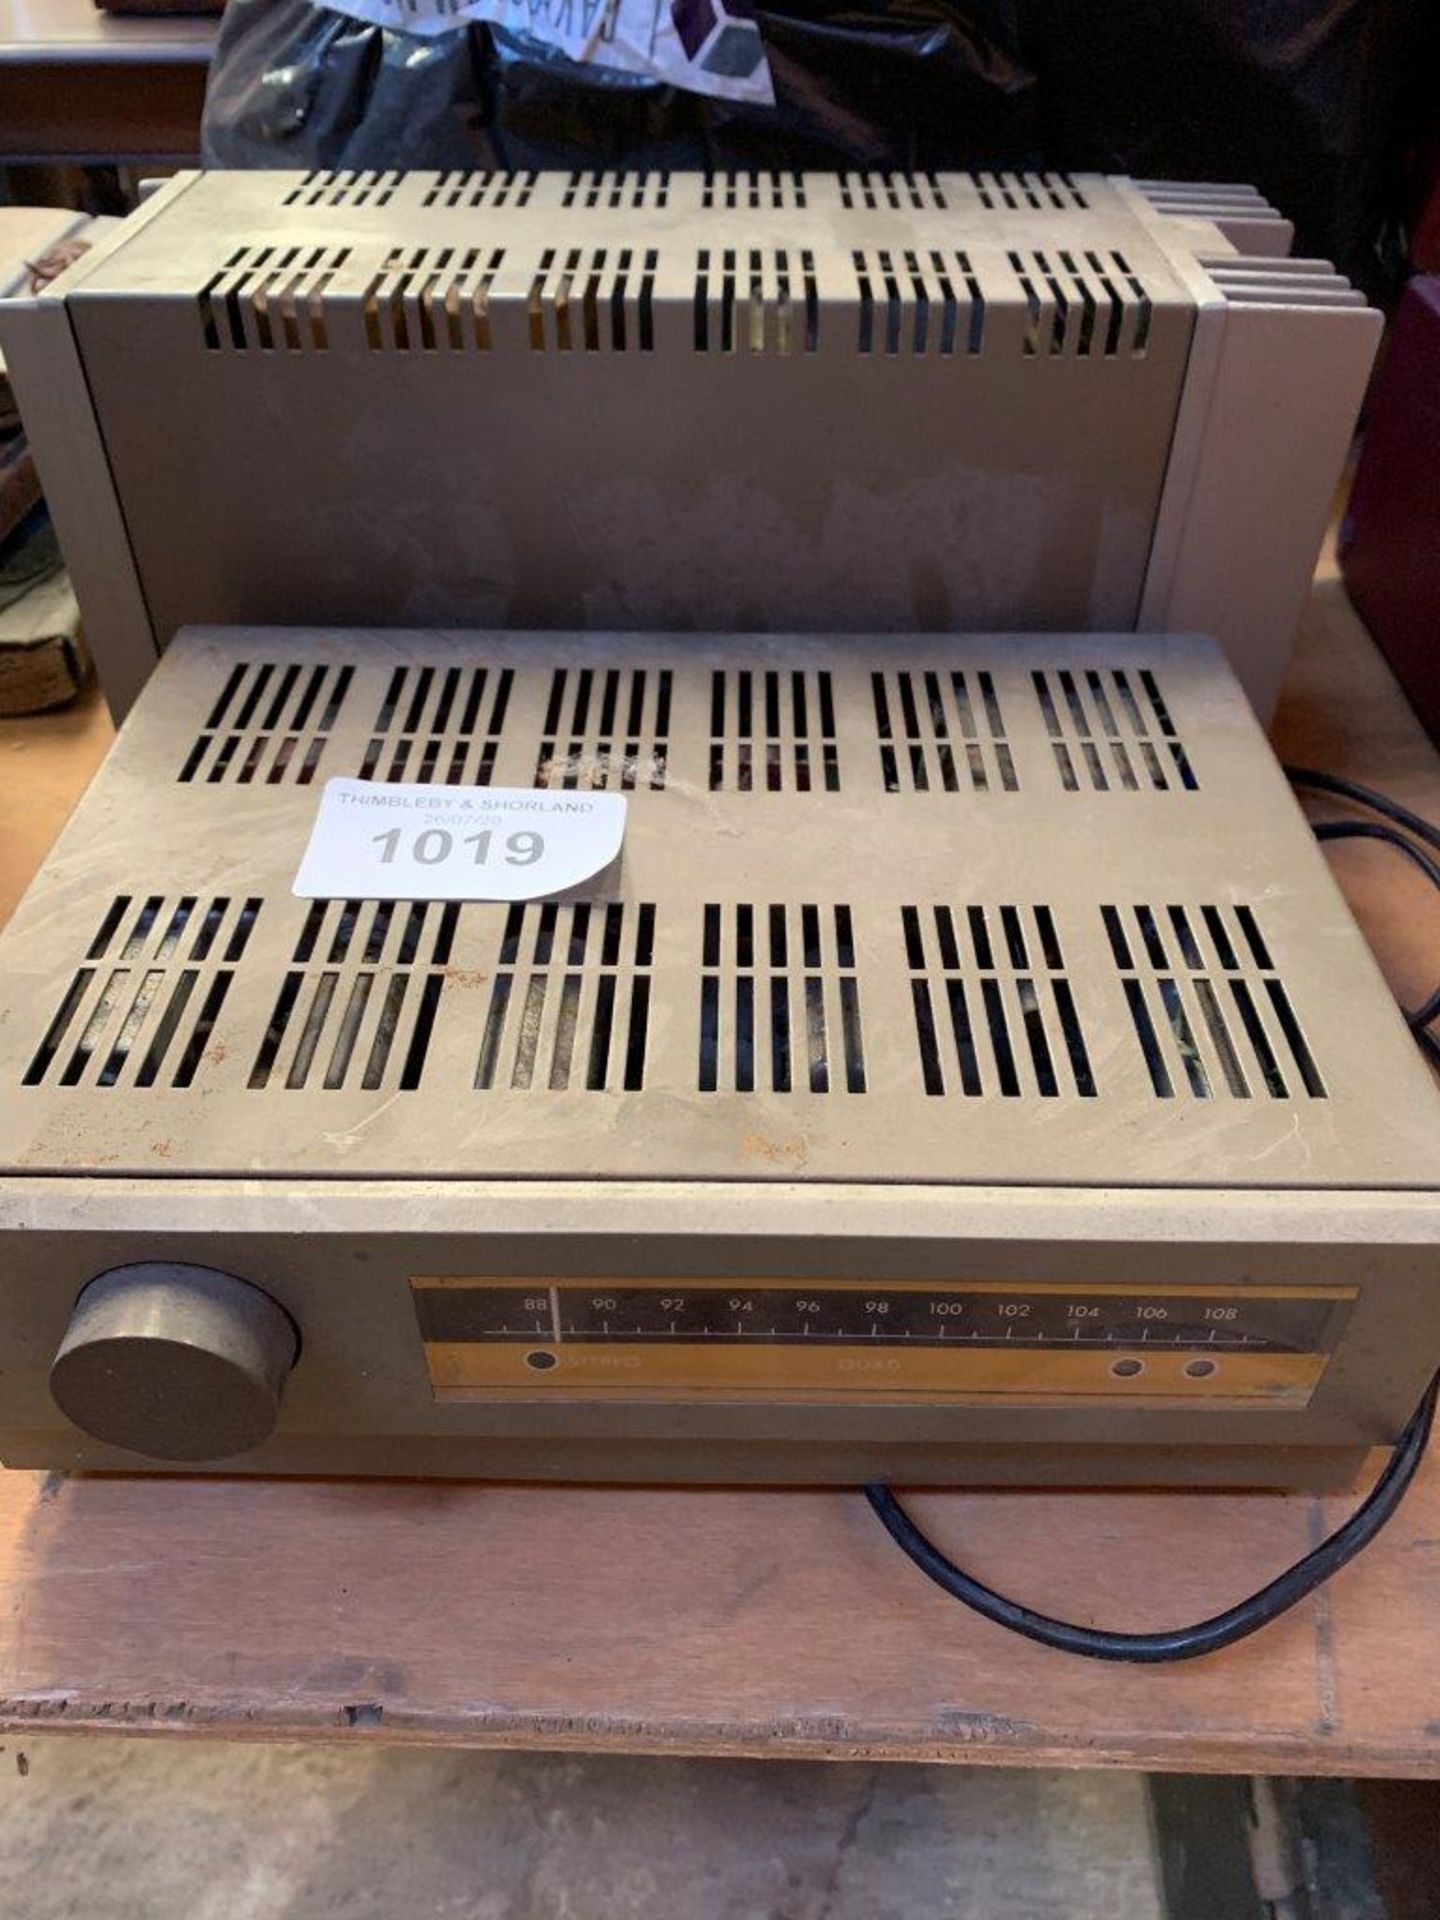 Quad FM11 tuner and Quad 303 power amplifier.